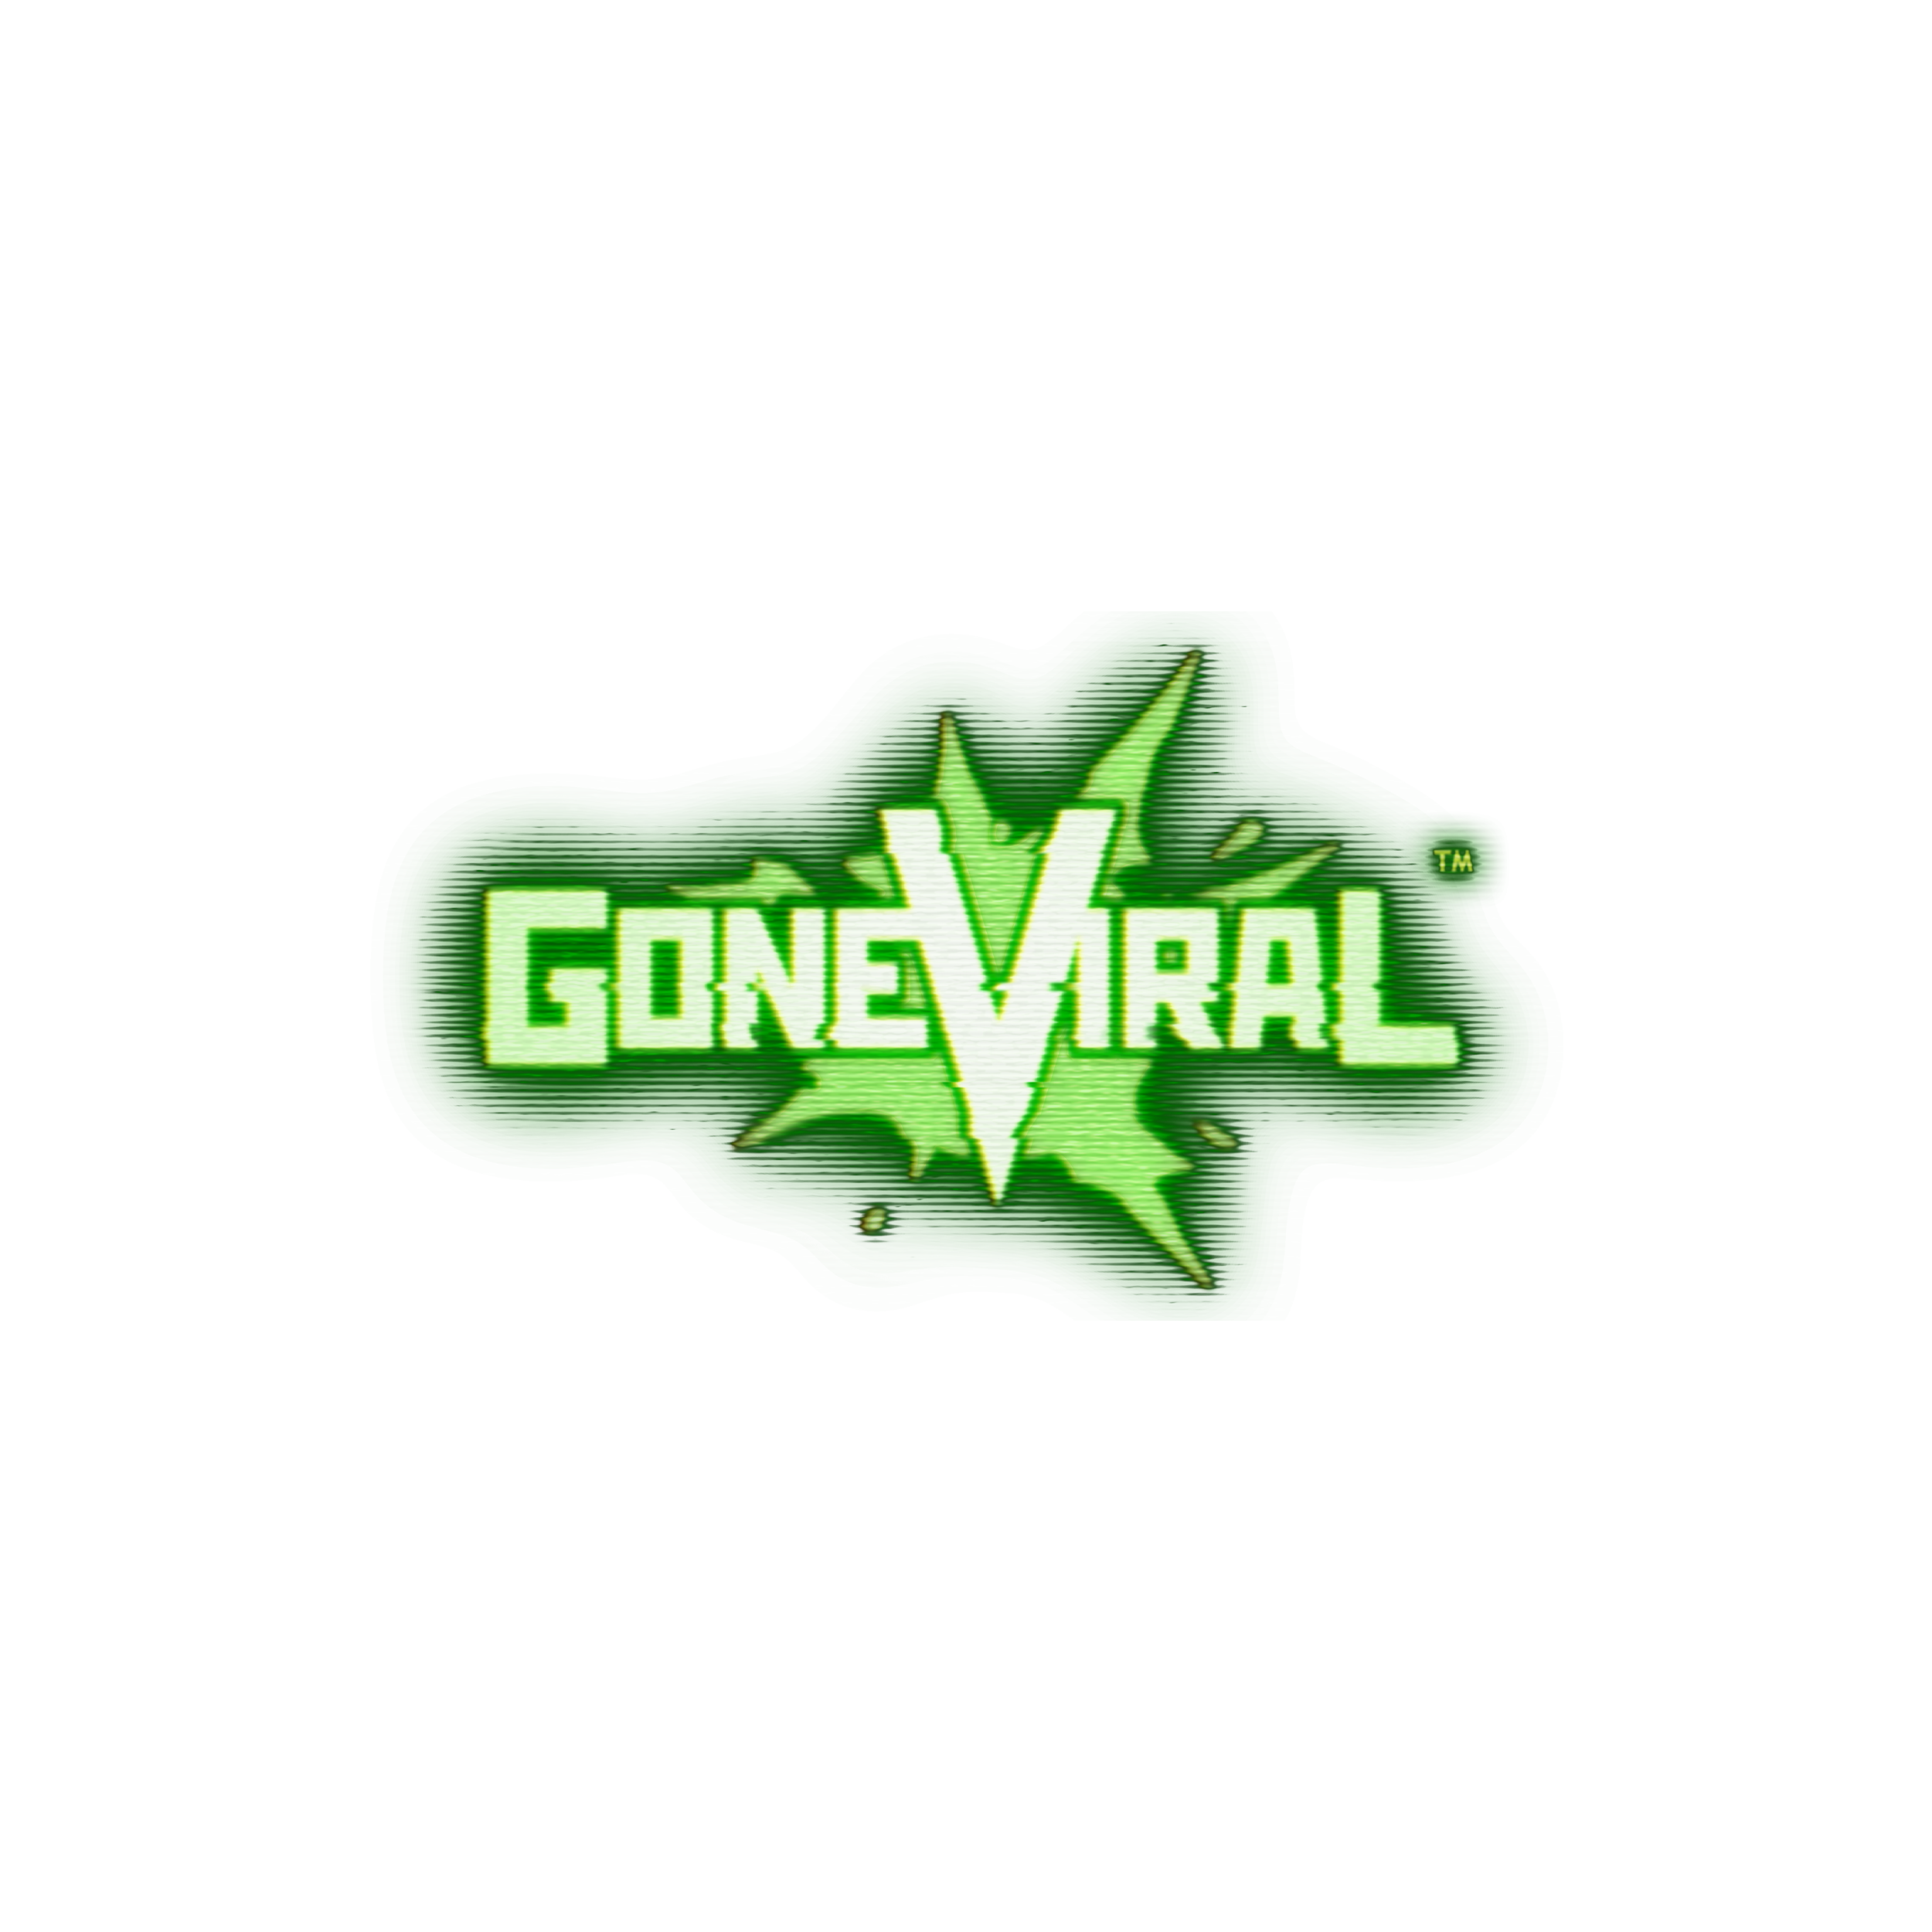 Gone Viral logo